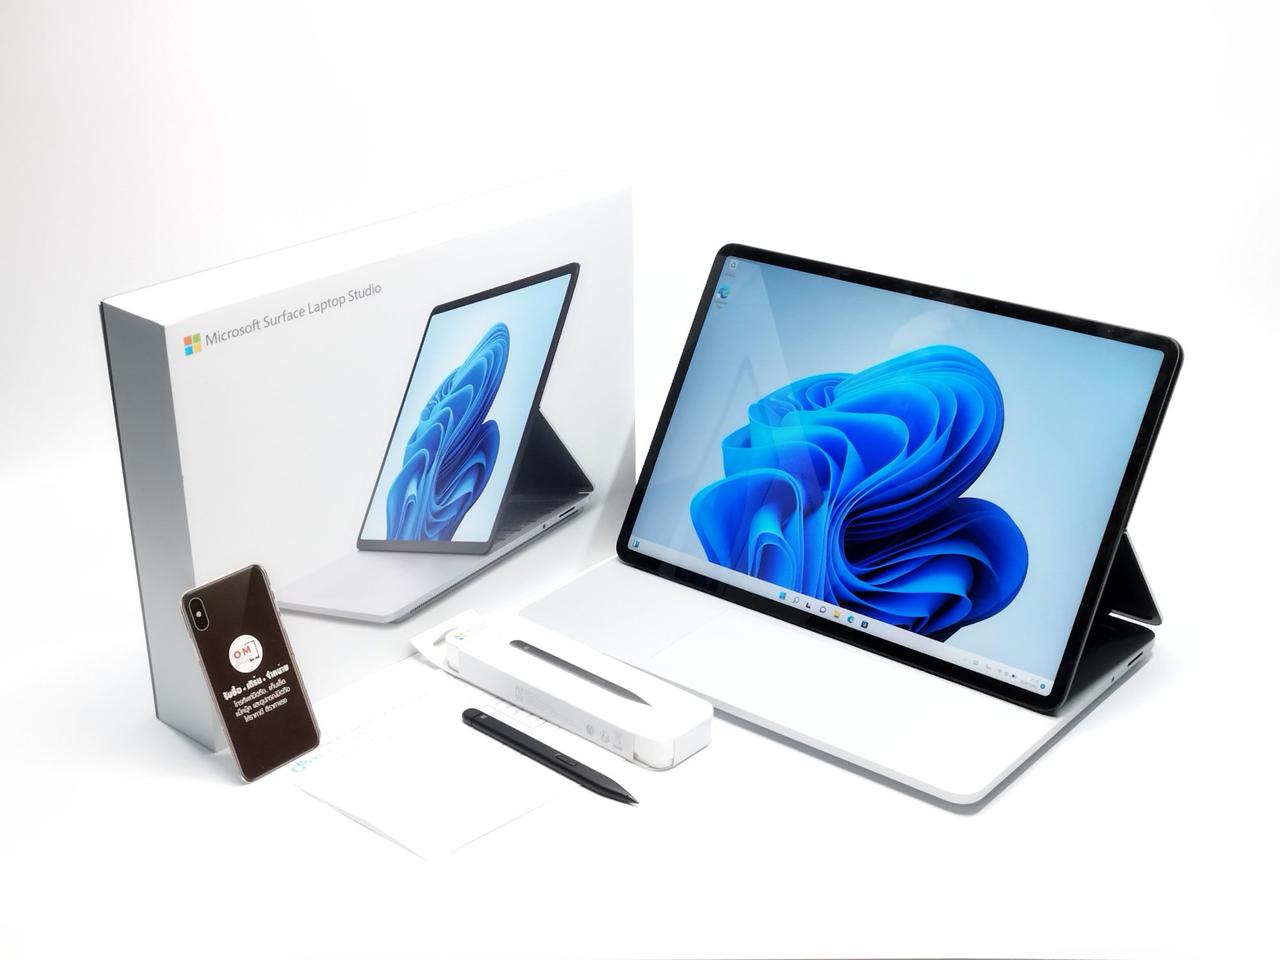 ขาย/แลก Microsoft Surface Laptop Studio Top สุด i7-11370H 16/512 GeForce RTX3050 Ti ศูนย์ไทย ประกันศูนย์ เพียง 54900.-